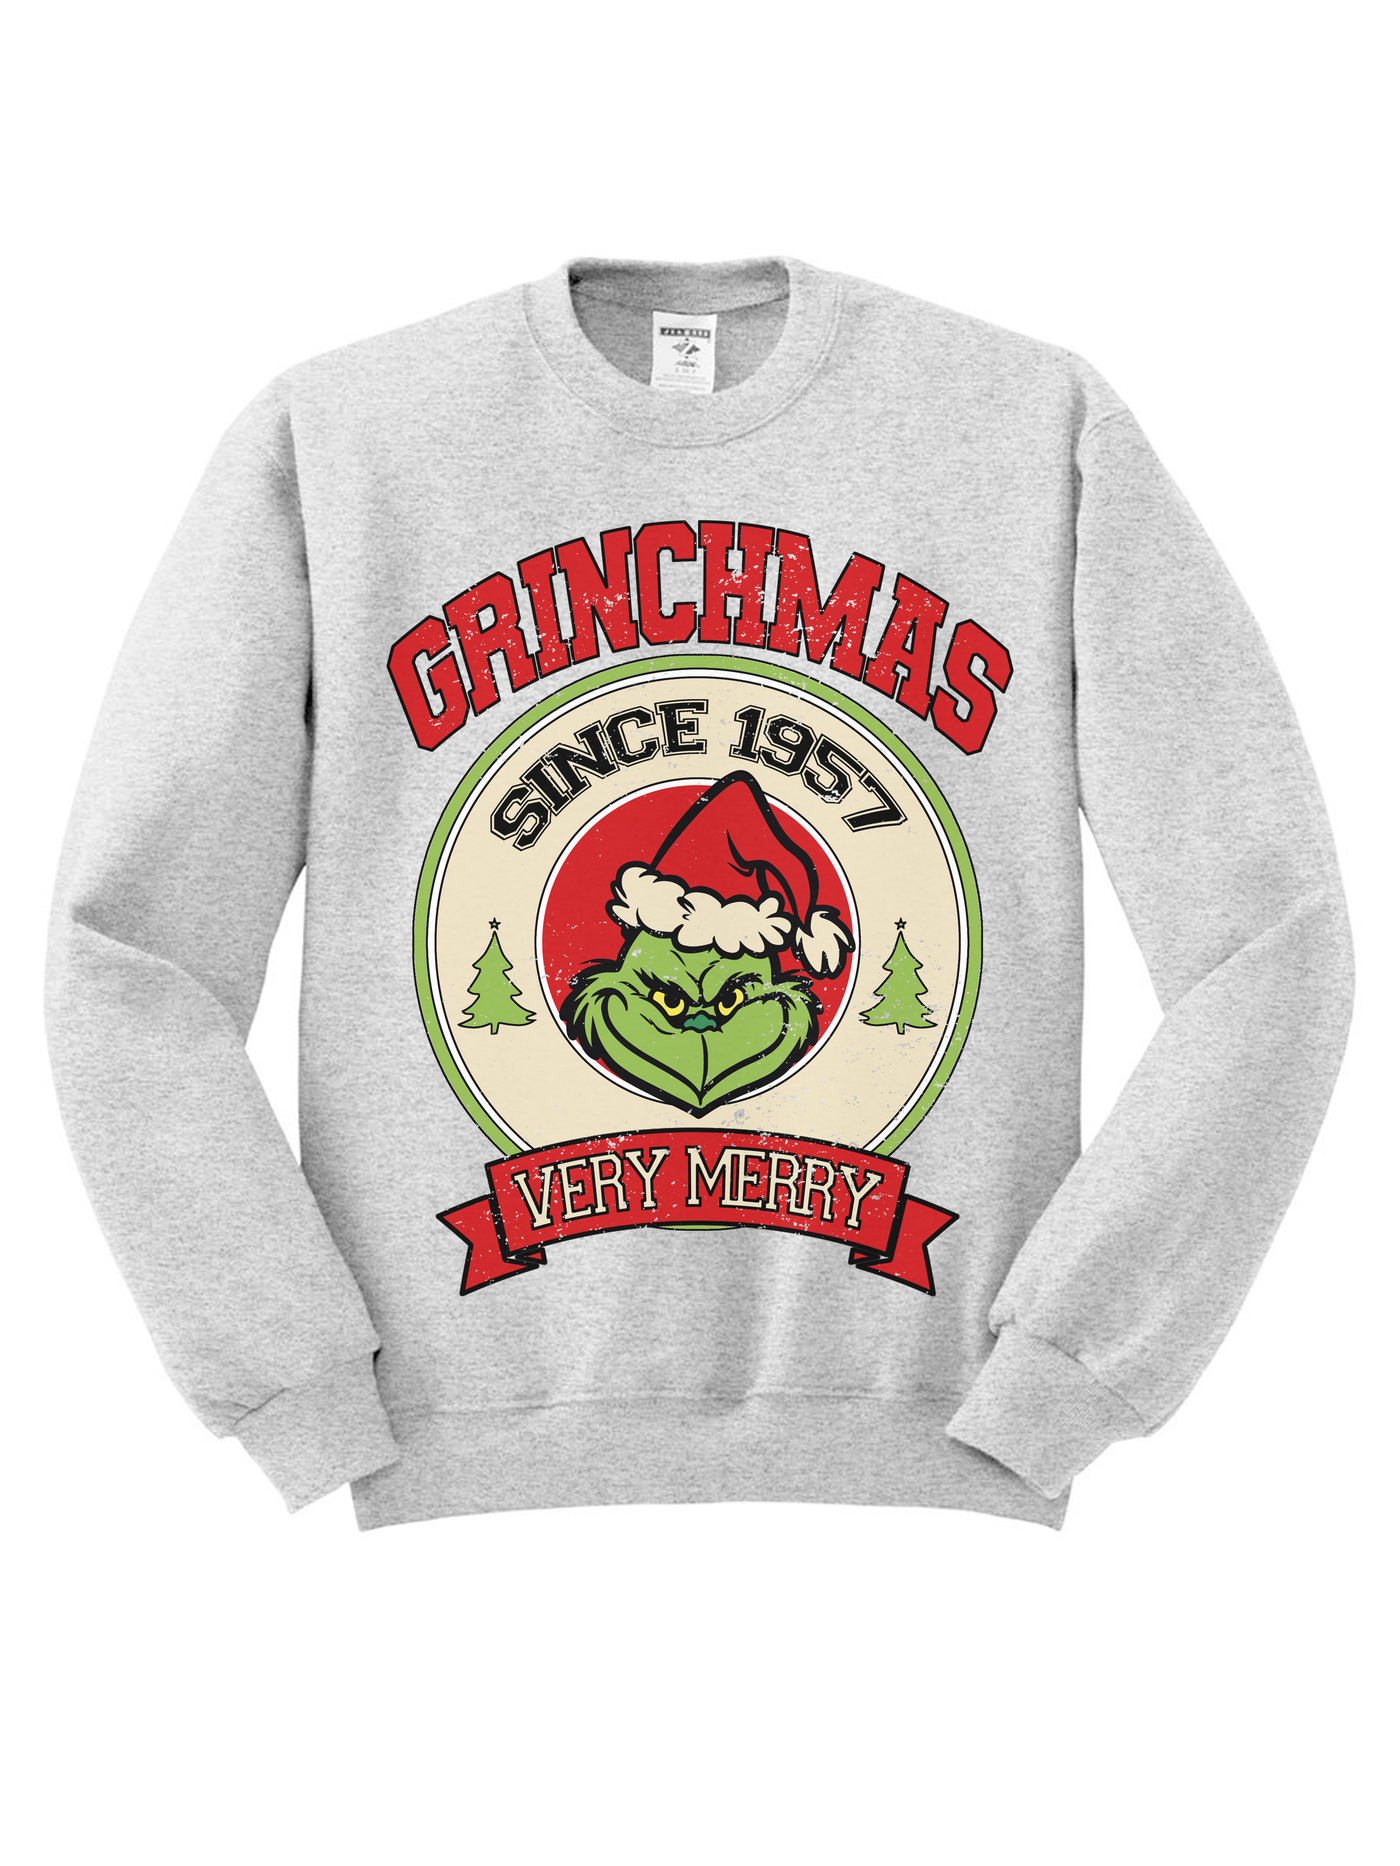 Grinchmas University Tee/Sweatshirt